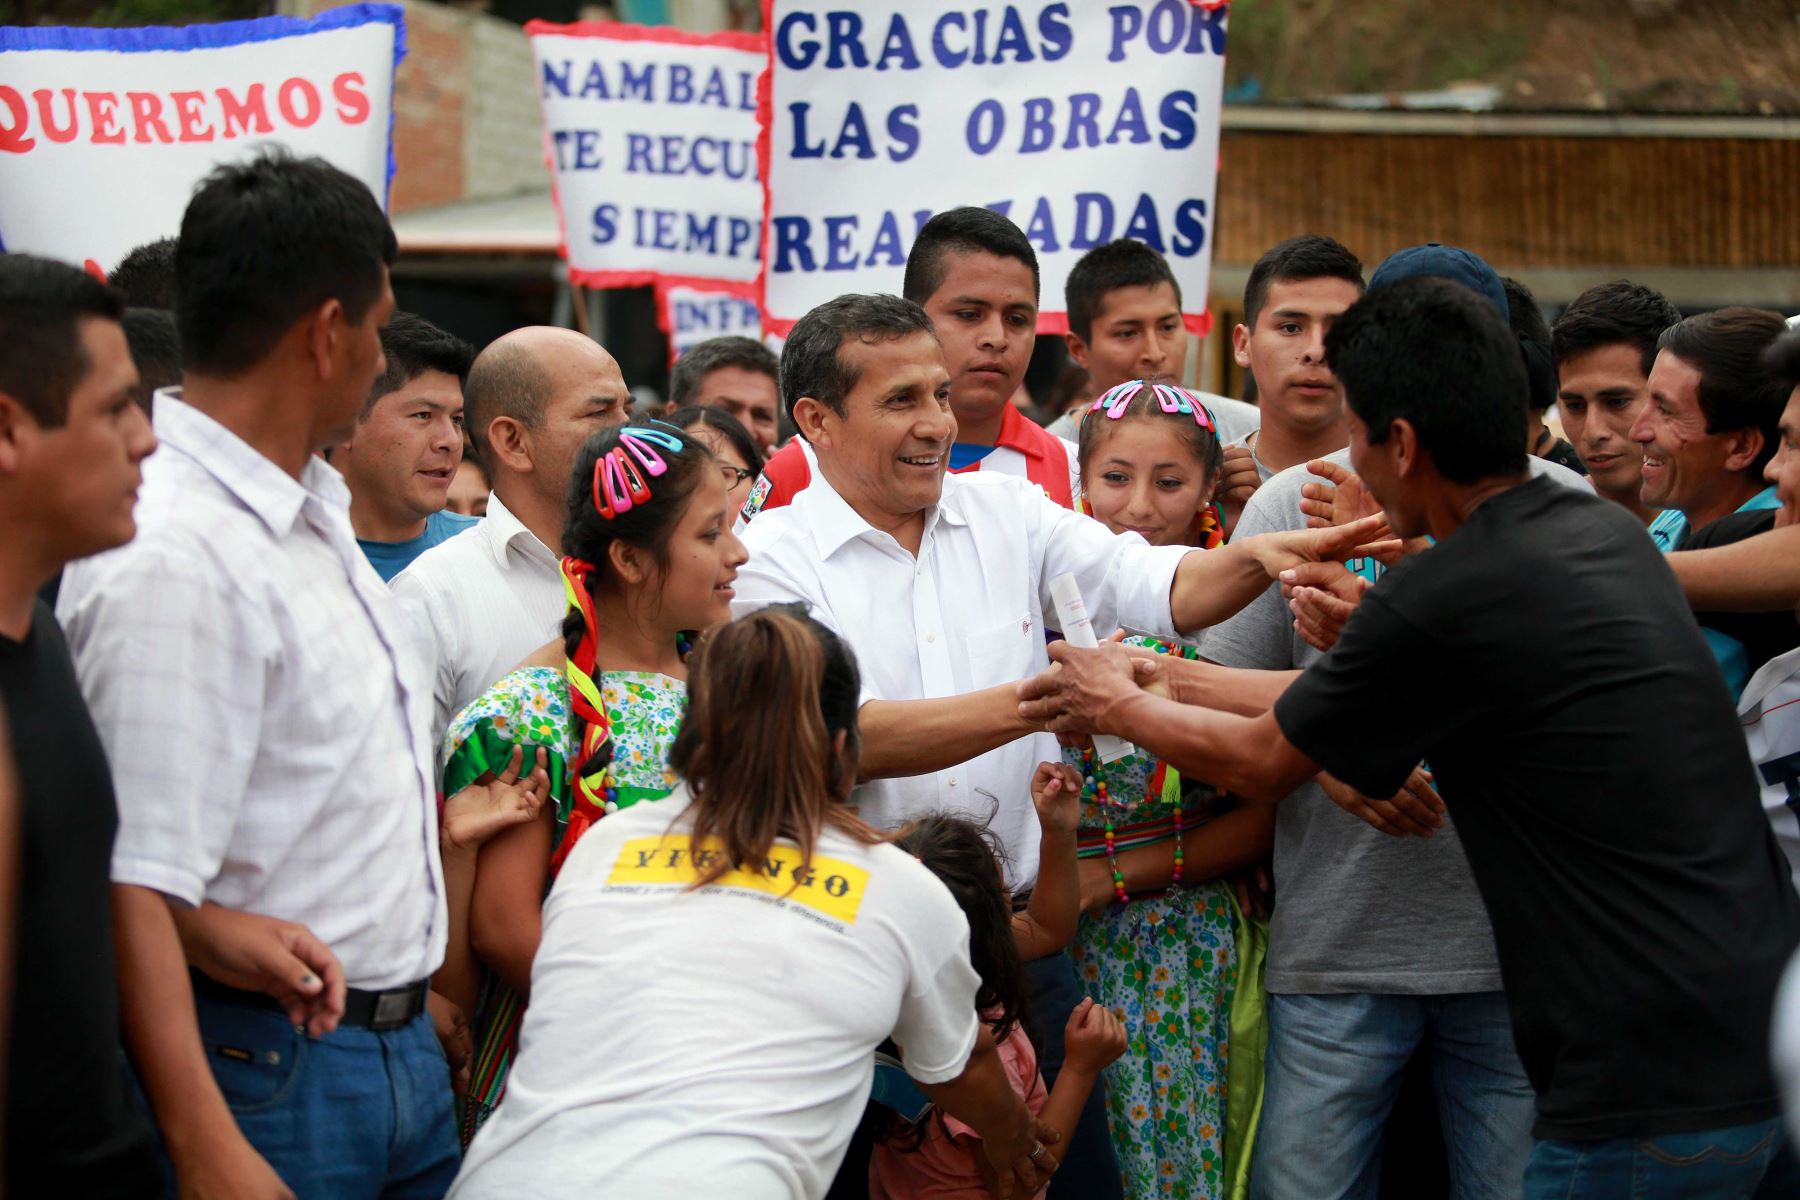 Presidente Ollanta Humala inauguró obras de rehabilitación y mejoramiento del tramo San Ignacio – Puente Integración y el malecón turístico de Puerto Internacional la Balsa en Namballe (Cajamarca). ANDINA/Prensa Presidencia